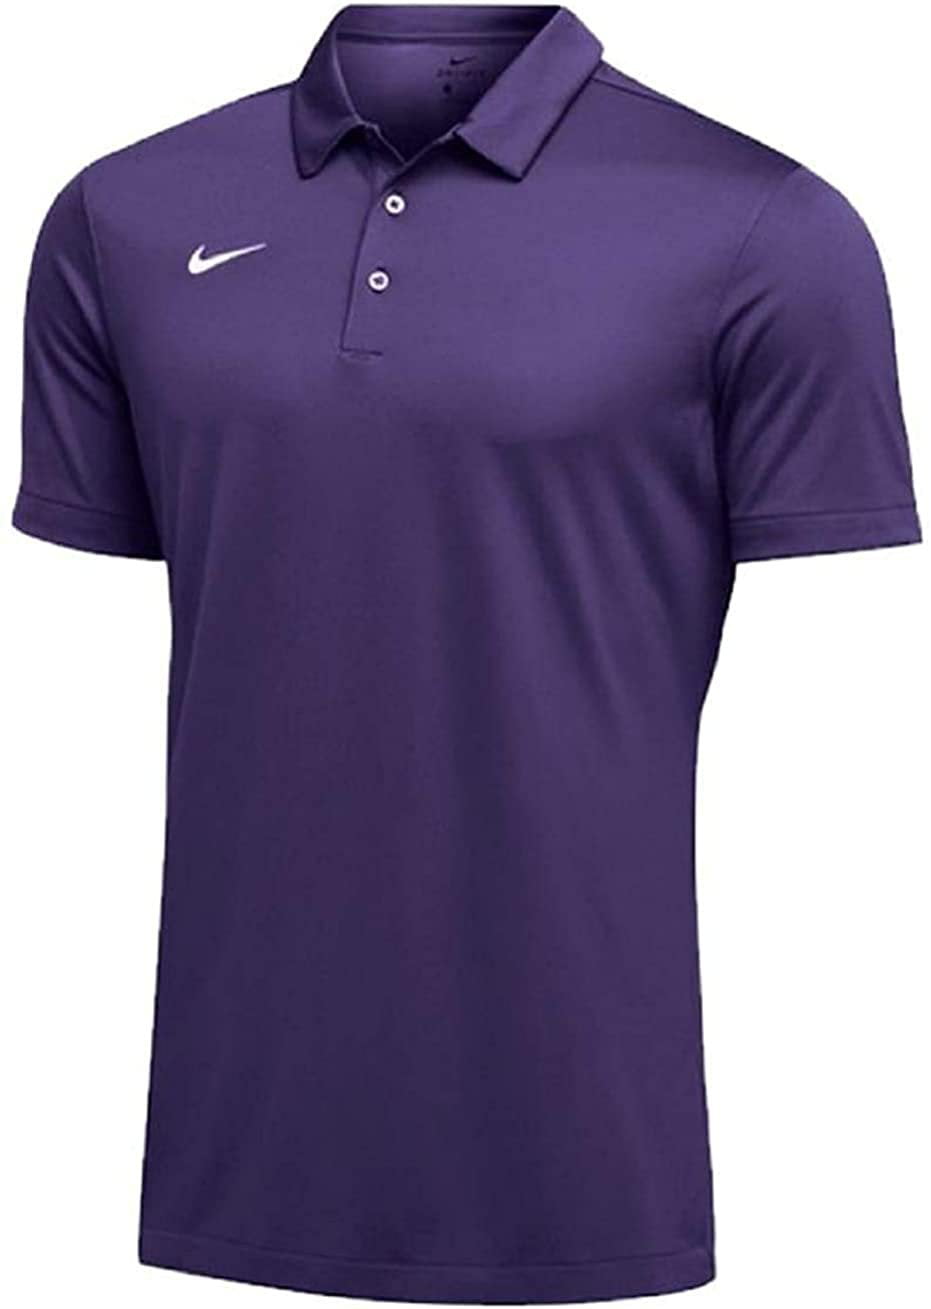 nike polo shirt purple